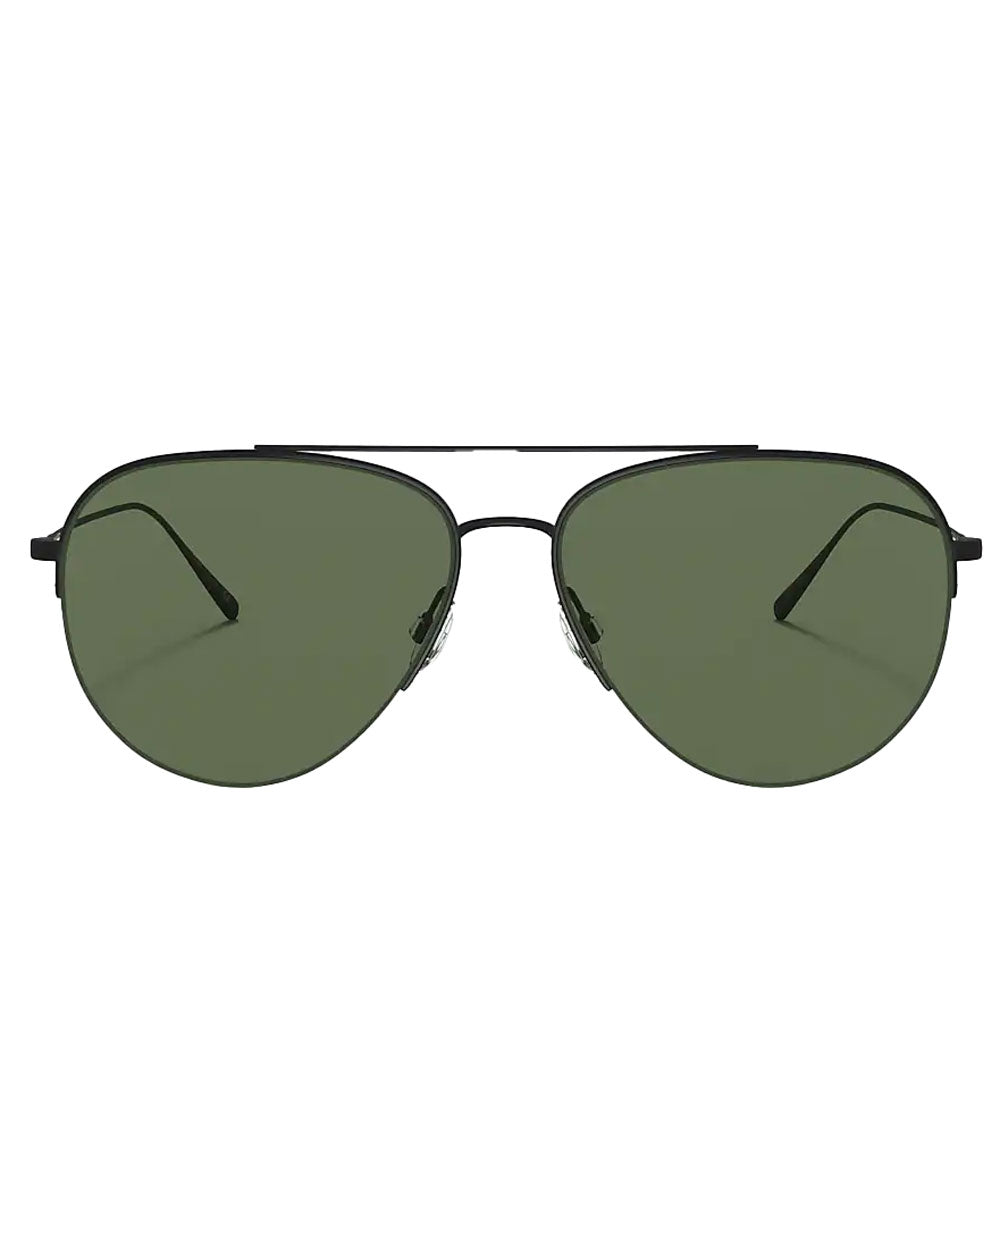 Cleamons Matte Black Polar Green Lens Sunglasses